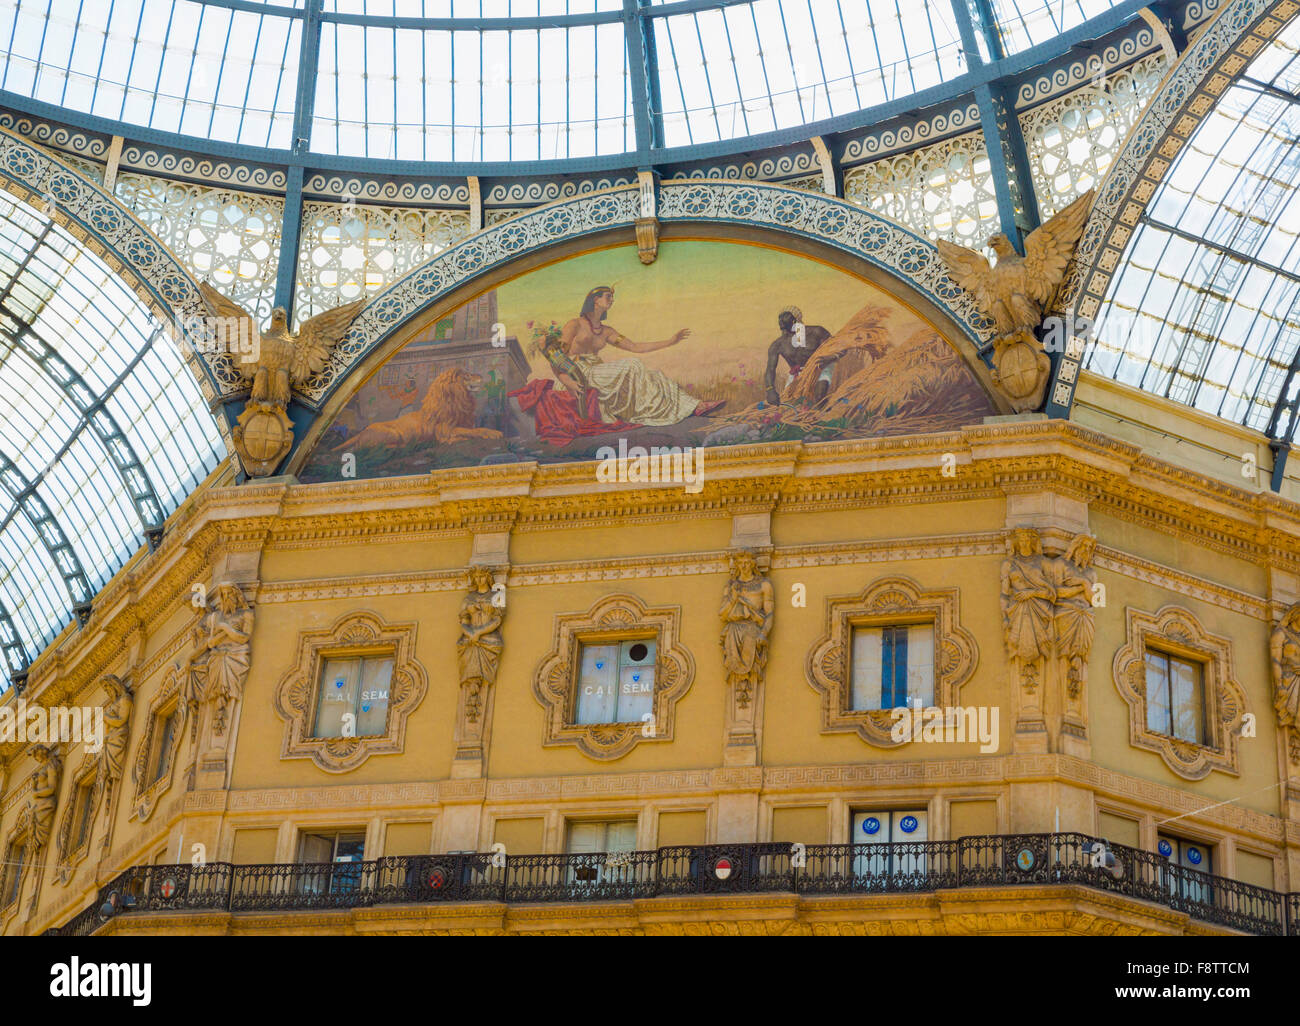 Mailand, Provinz Mailand, Lombardei, Italien.  Einkaufspassage Galleria Vittorio Emanuele II. Allegorischen Fresken aus Afrika. Stockfoto